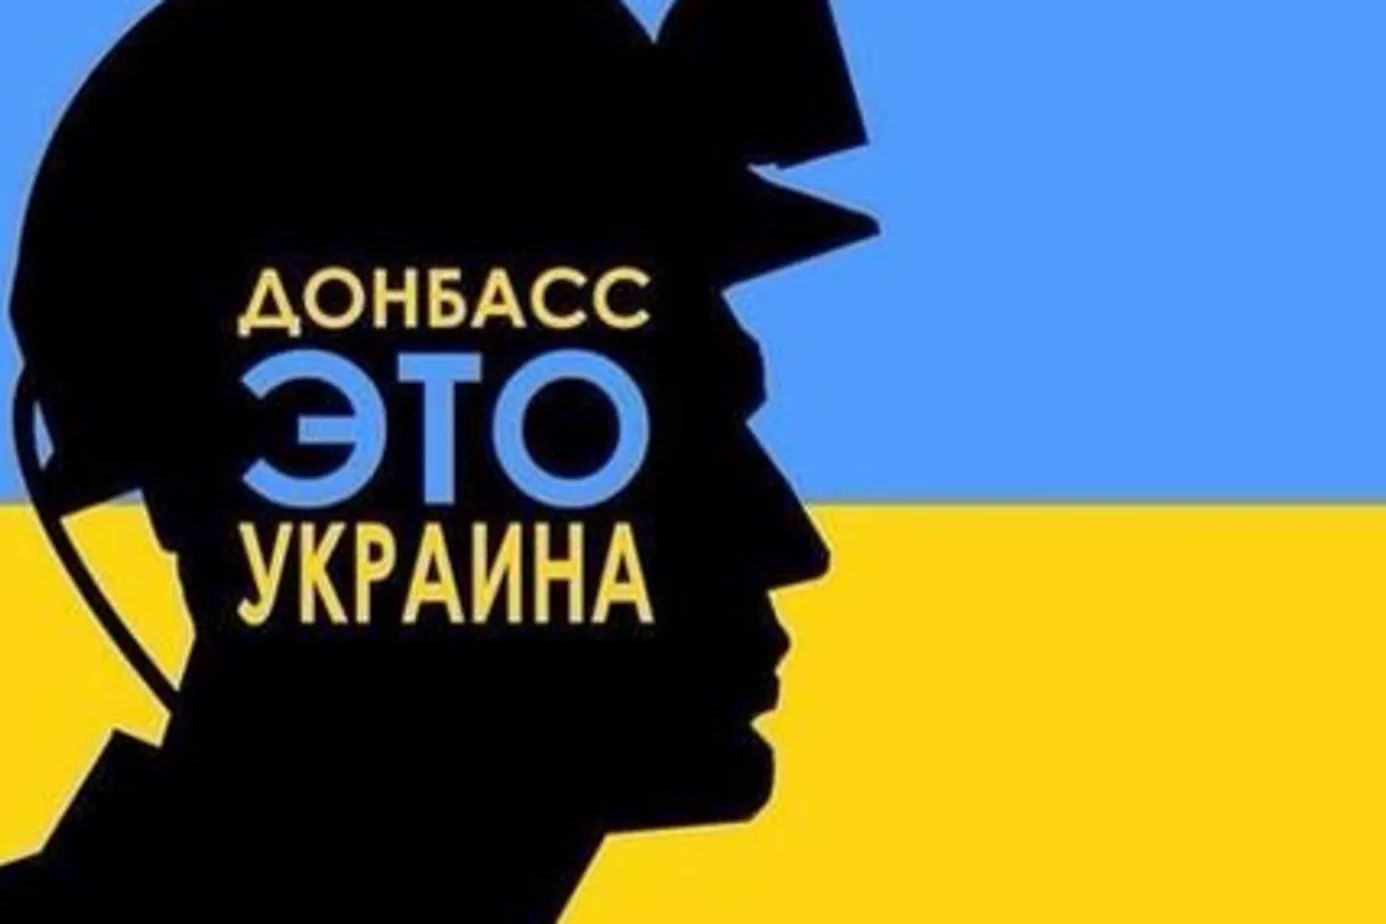 Наши в тылу врага празднуют День Независимости - флаг Украины появился в Луганске рядом с бригадой ВС РФ